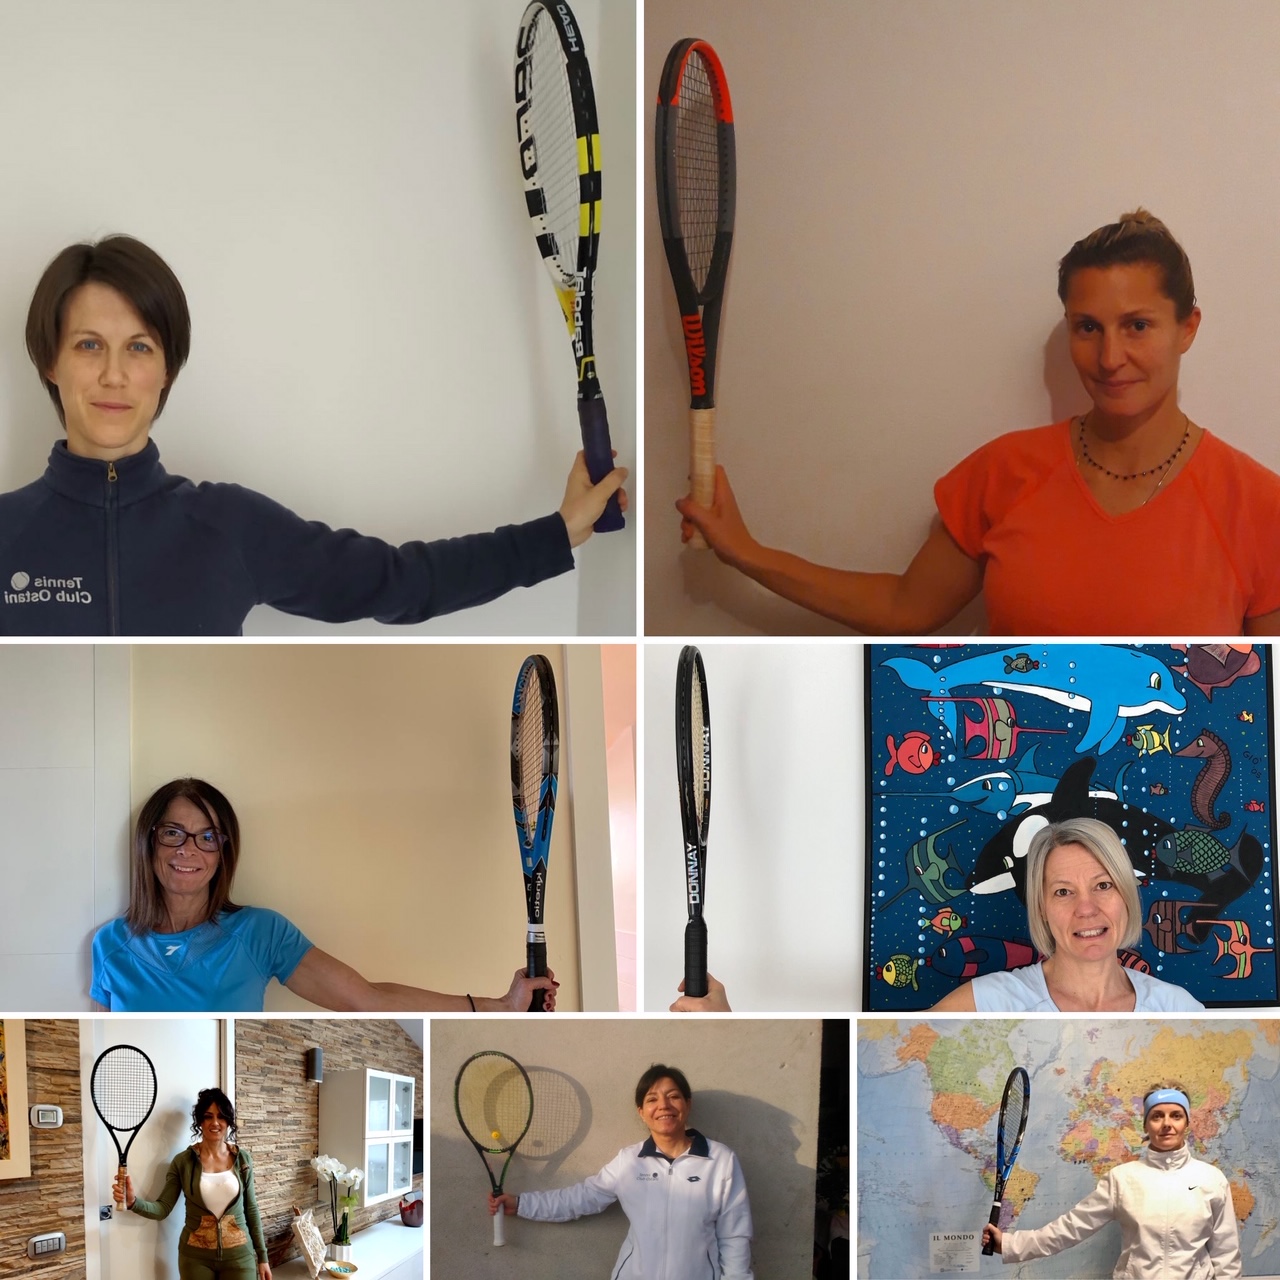 Tennis club Ostani Montebelluna, le foto da casa dei giocatori con la racchetta in mano